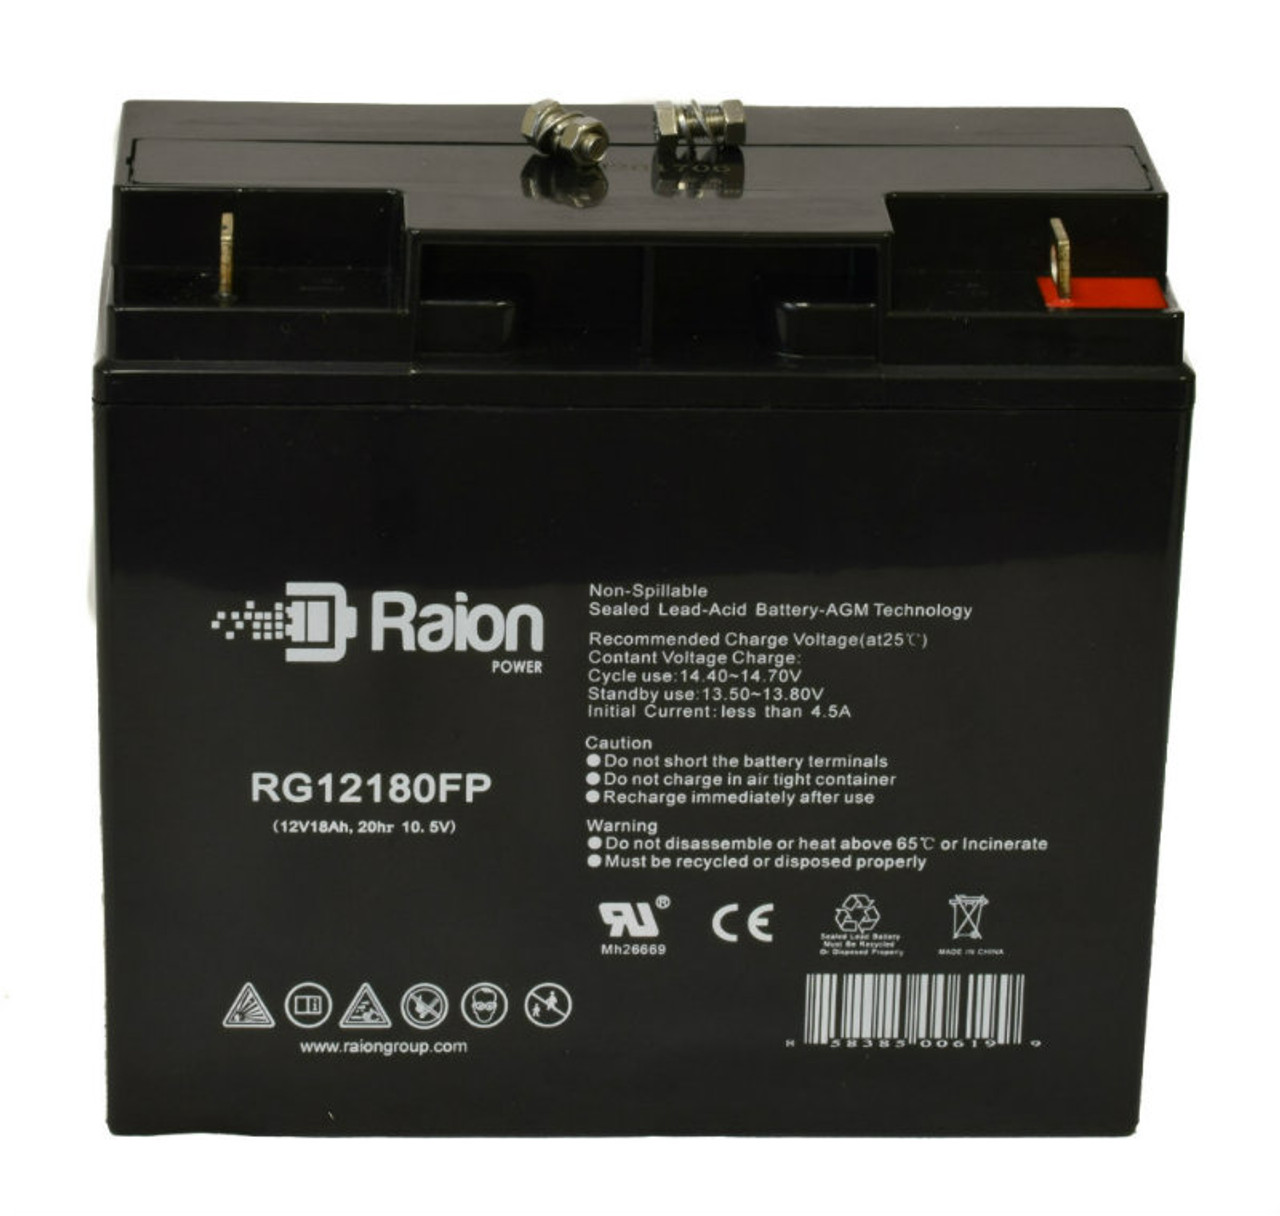 Raion Power RG12180FP 12V 18Ah Lead Acid Battery for Union MX-12180